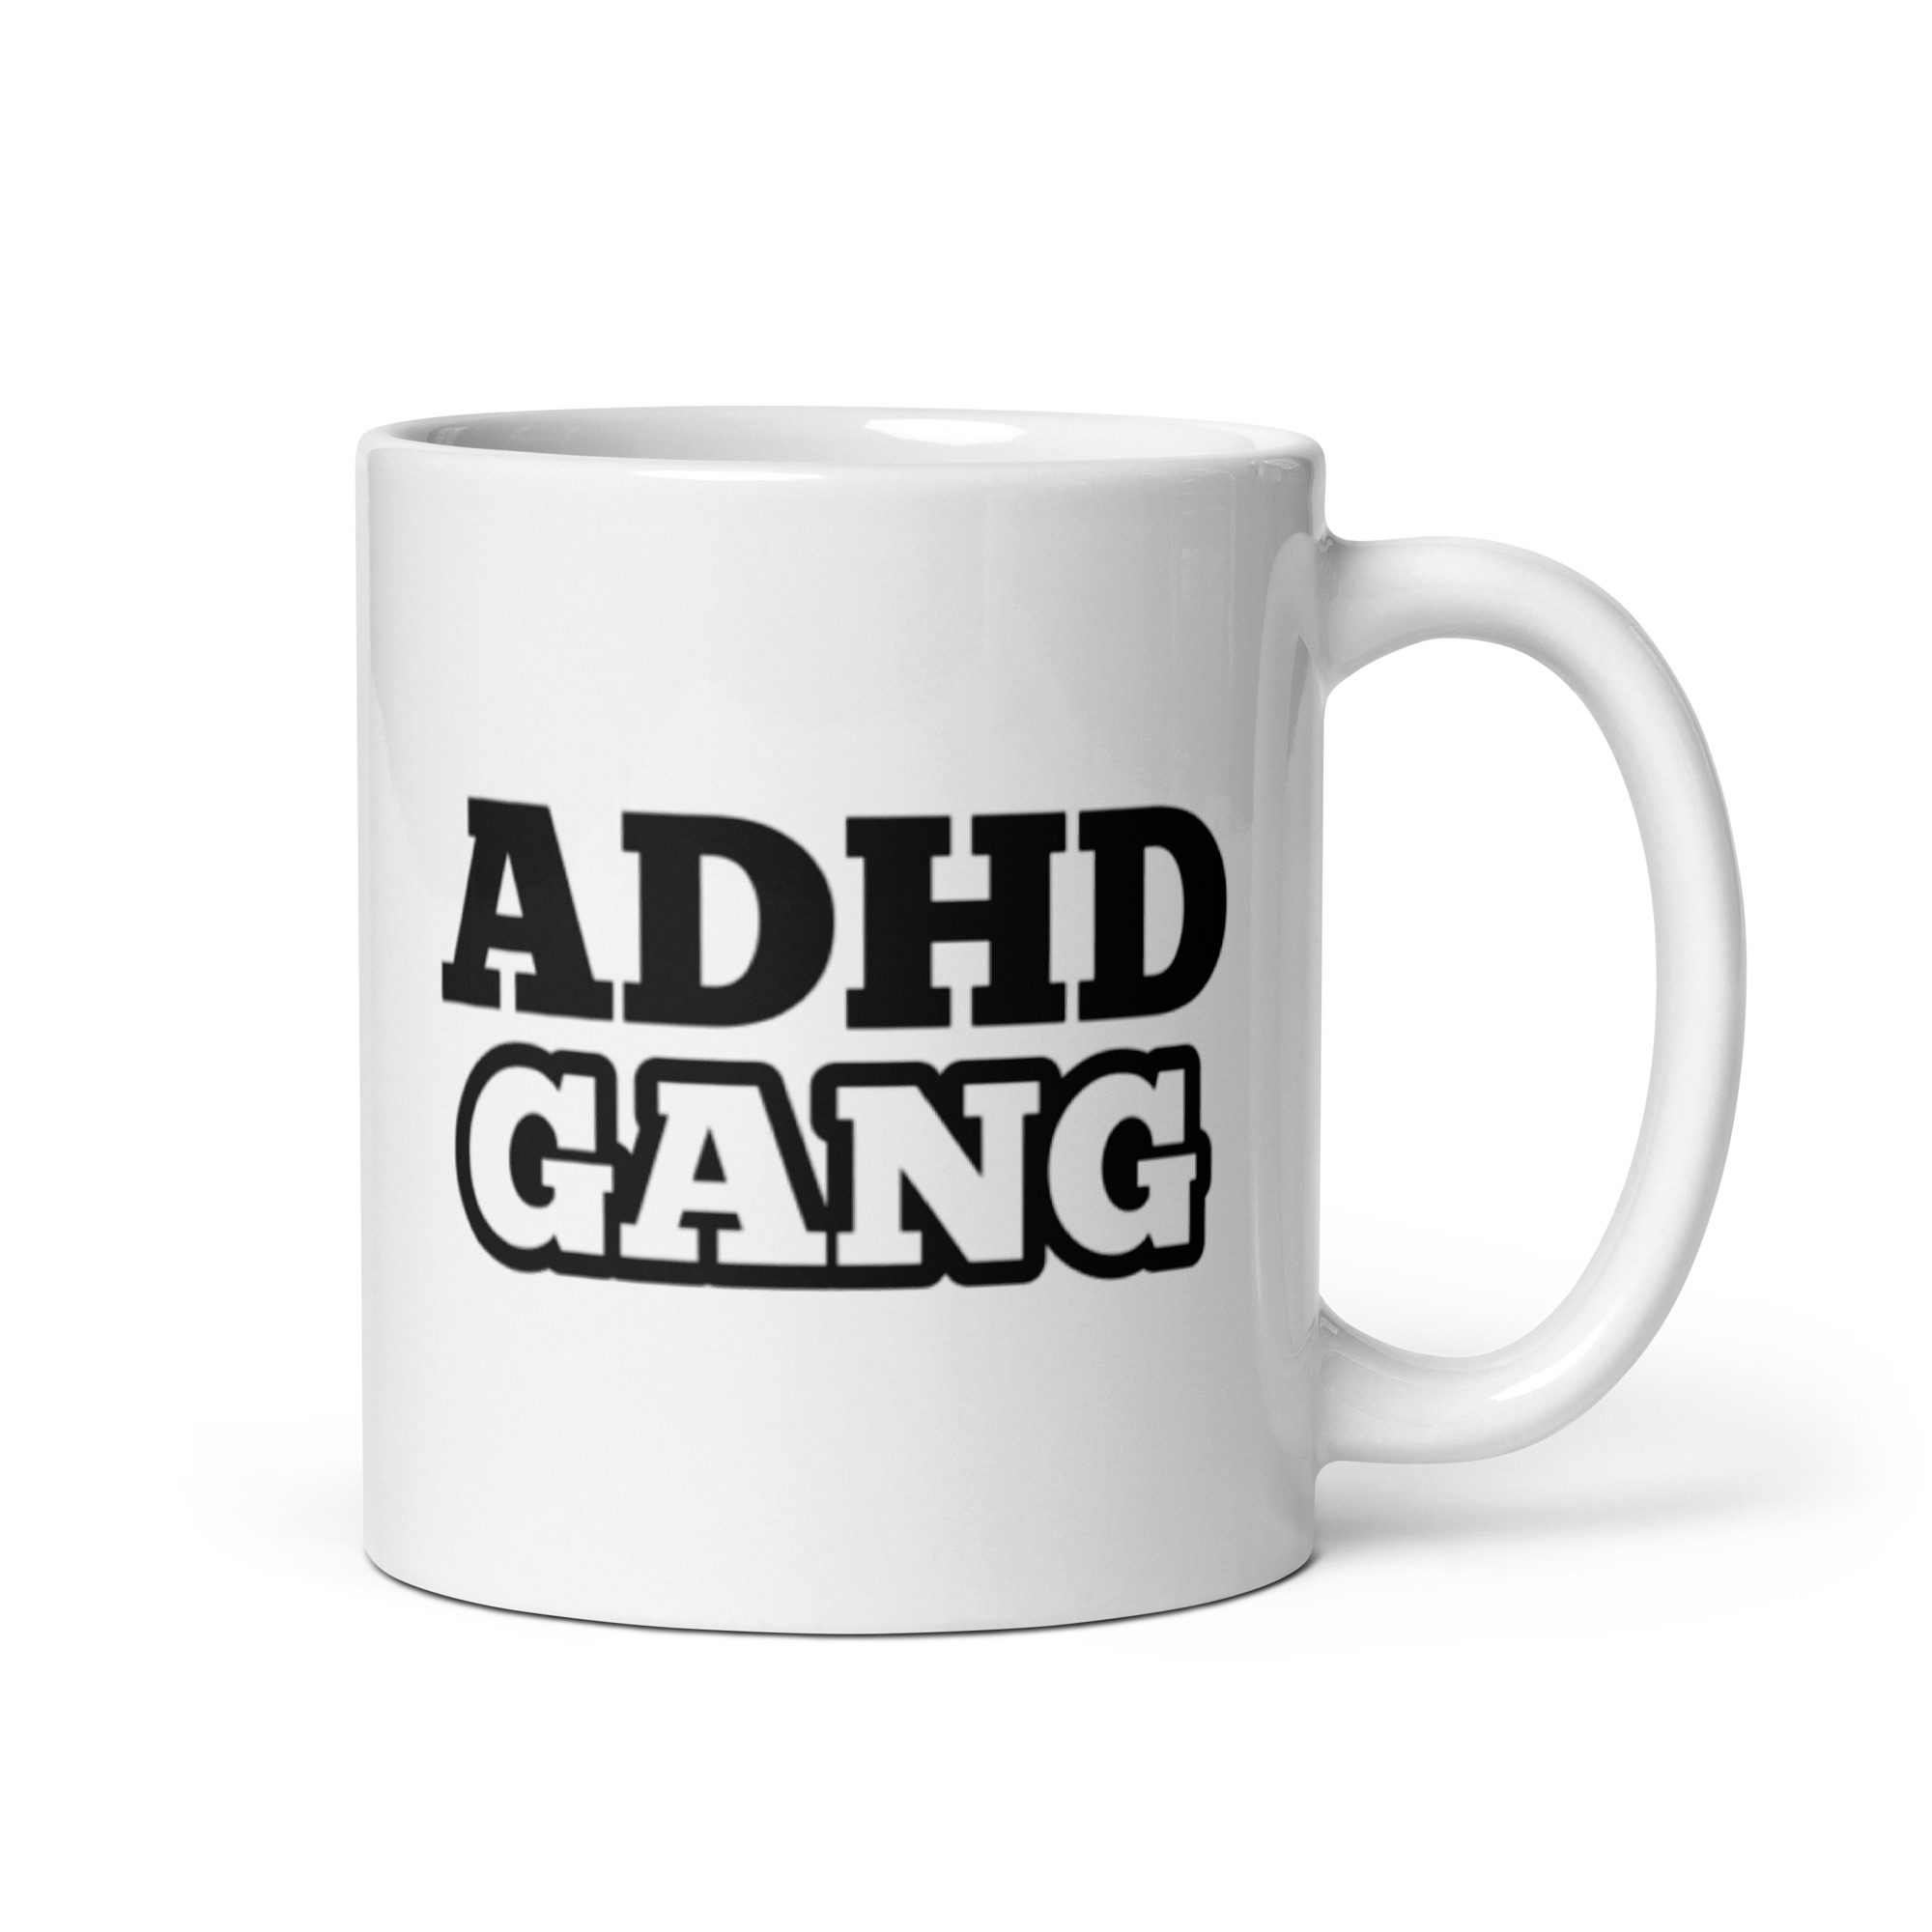 ADHD Gang Mug